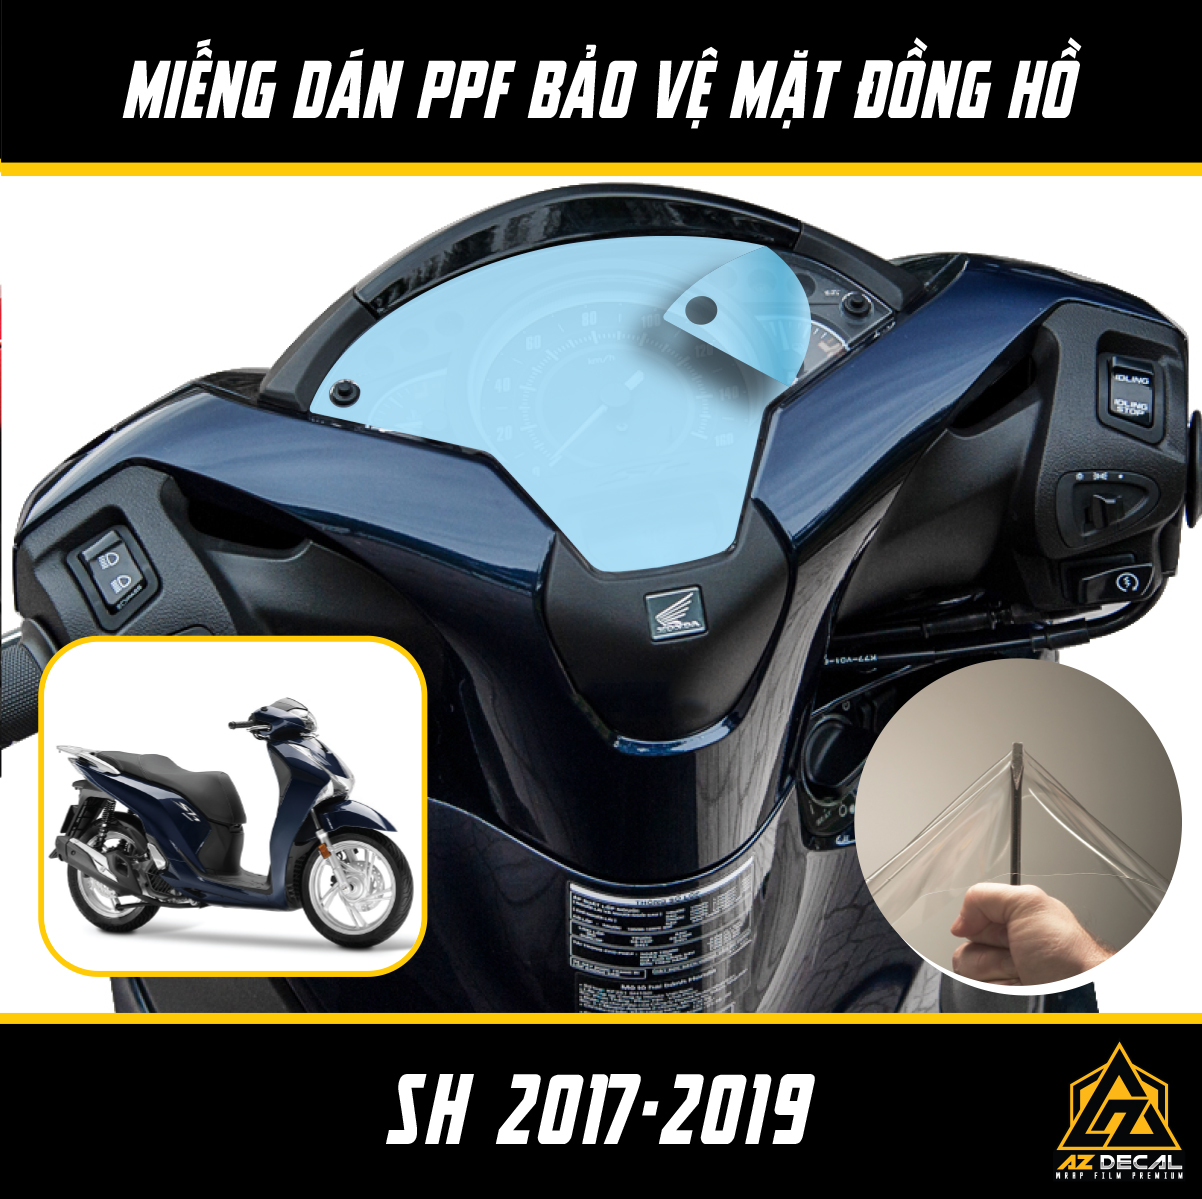 Miếng Dán PPF Bảo Vệ Mặt Đồng Hồ Xe Honda SH Việt Nam 2017 - 2019